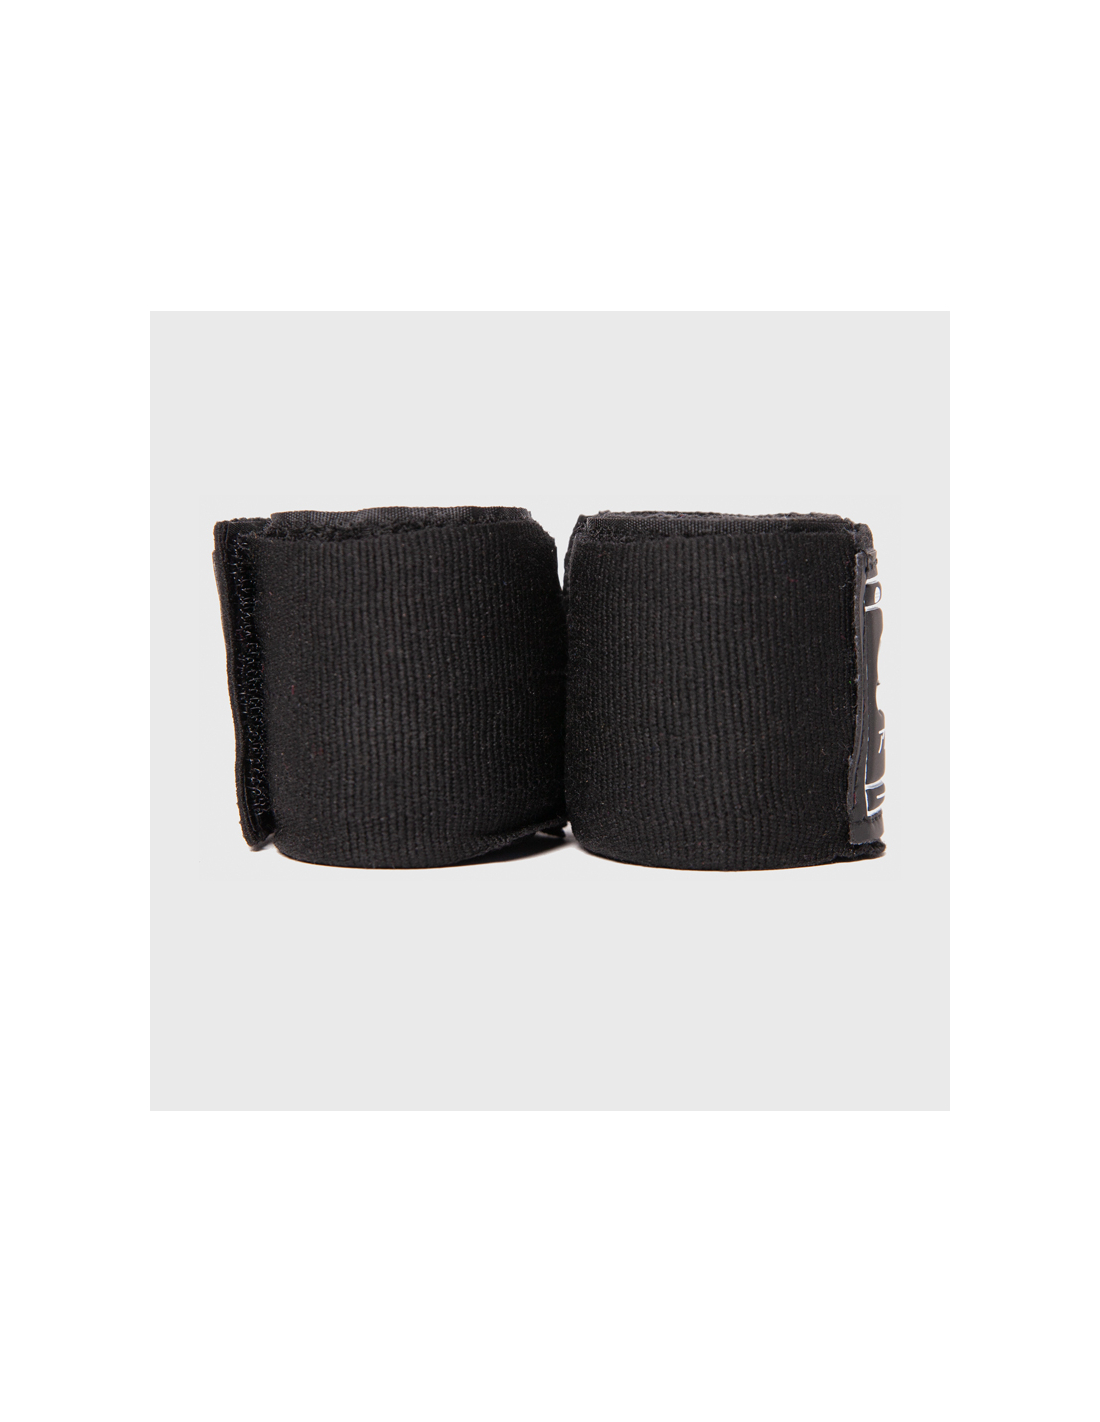 Bandage de boxe Gorilla Wear - Bandage de boxe - Noir - 3 m